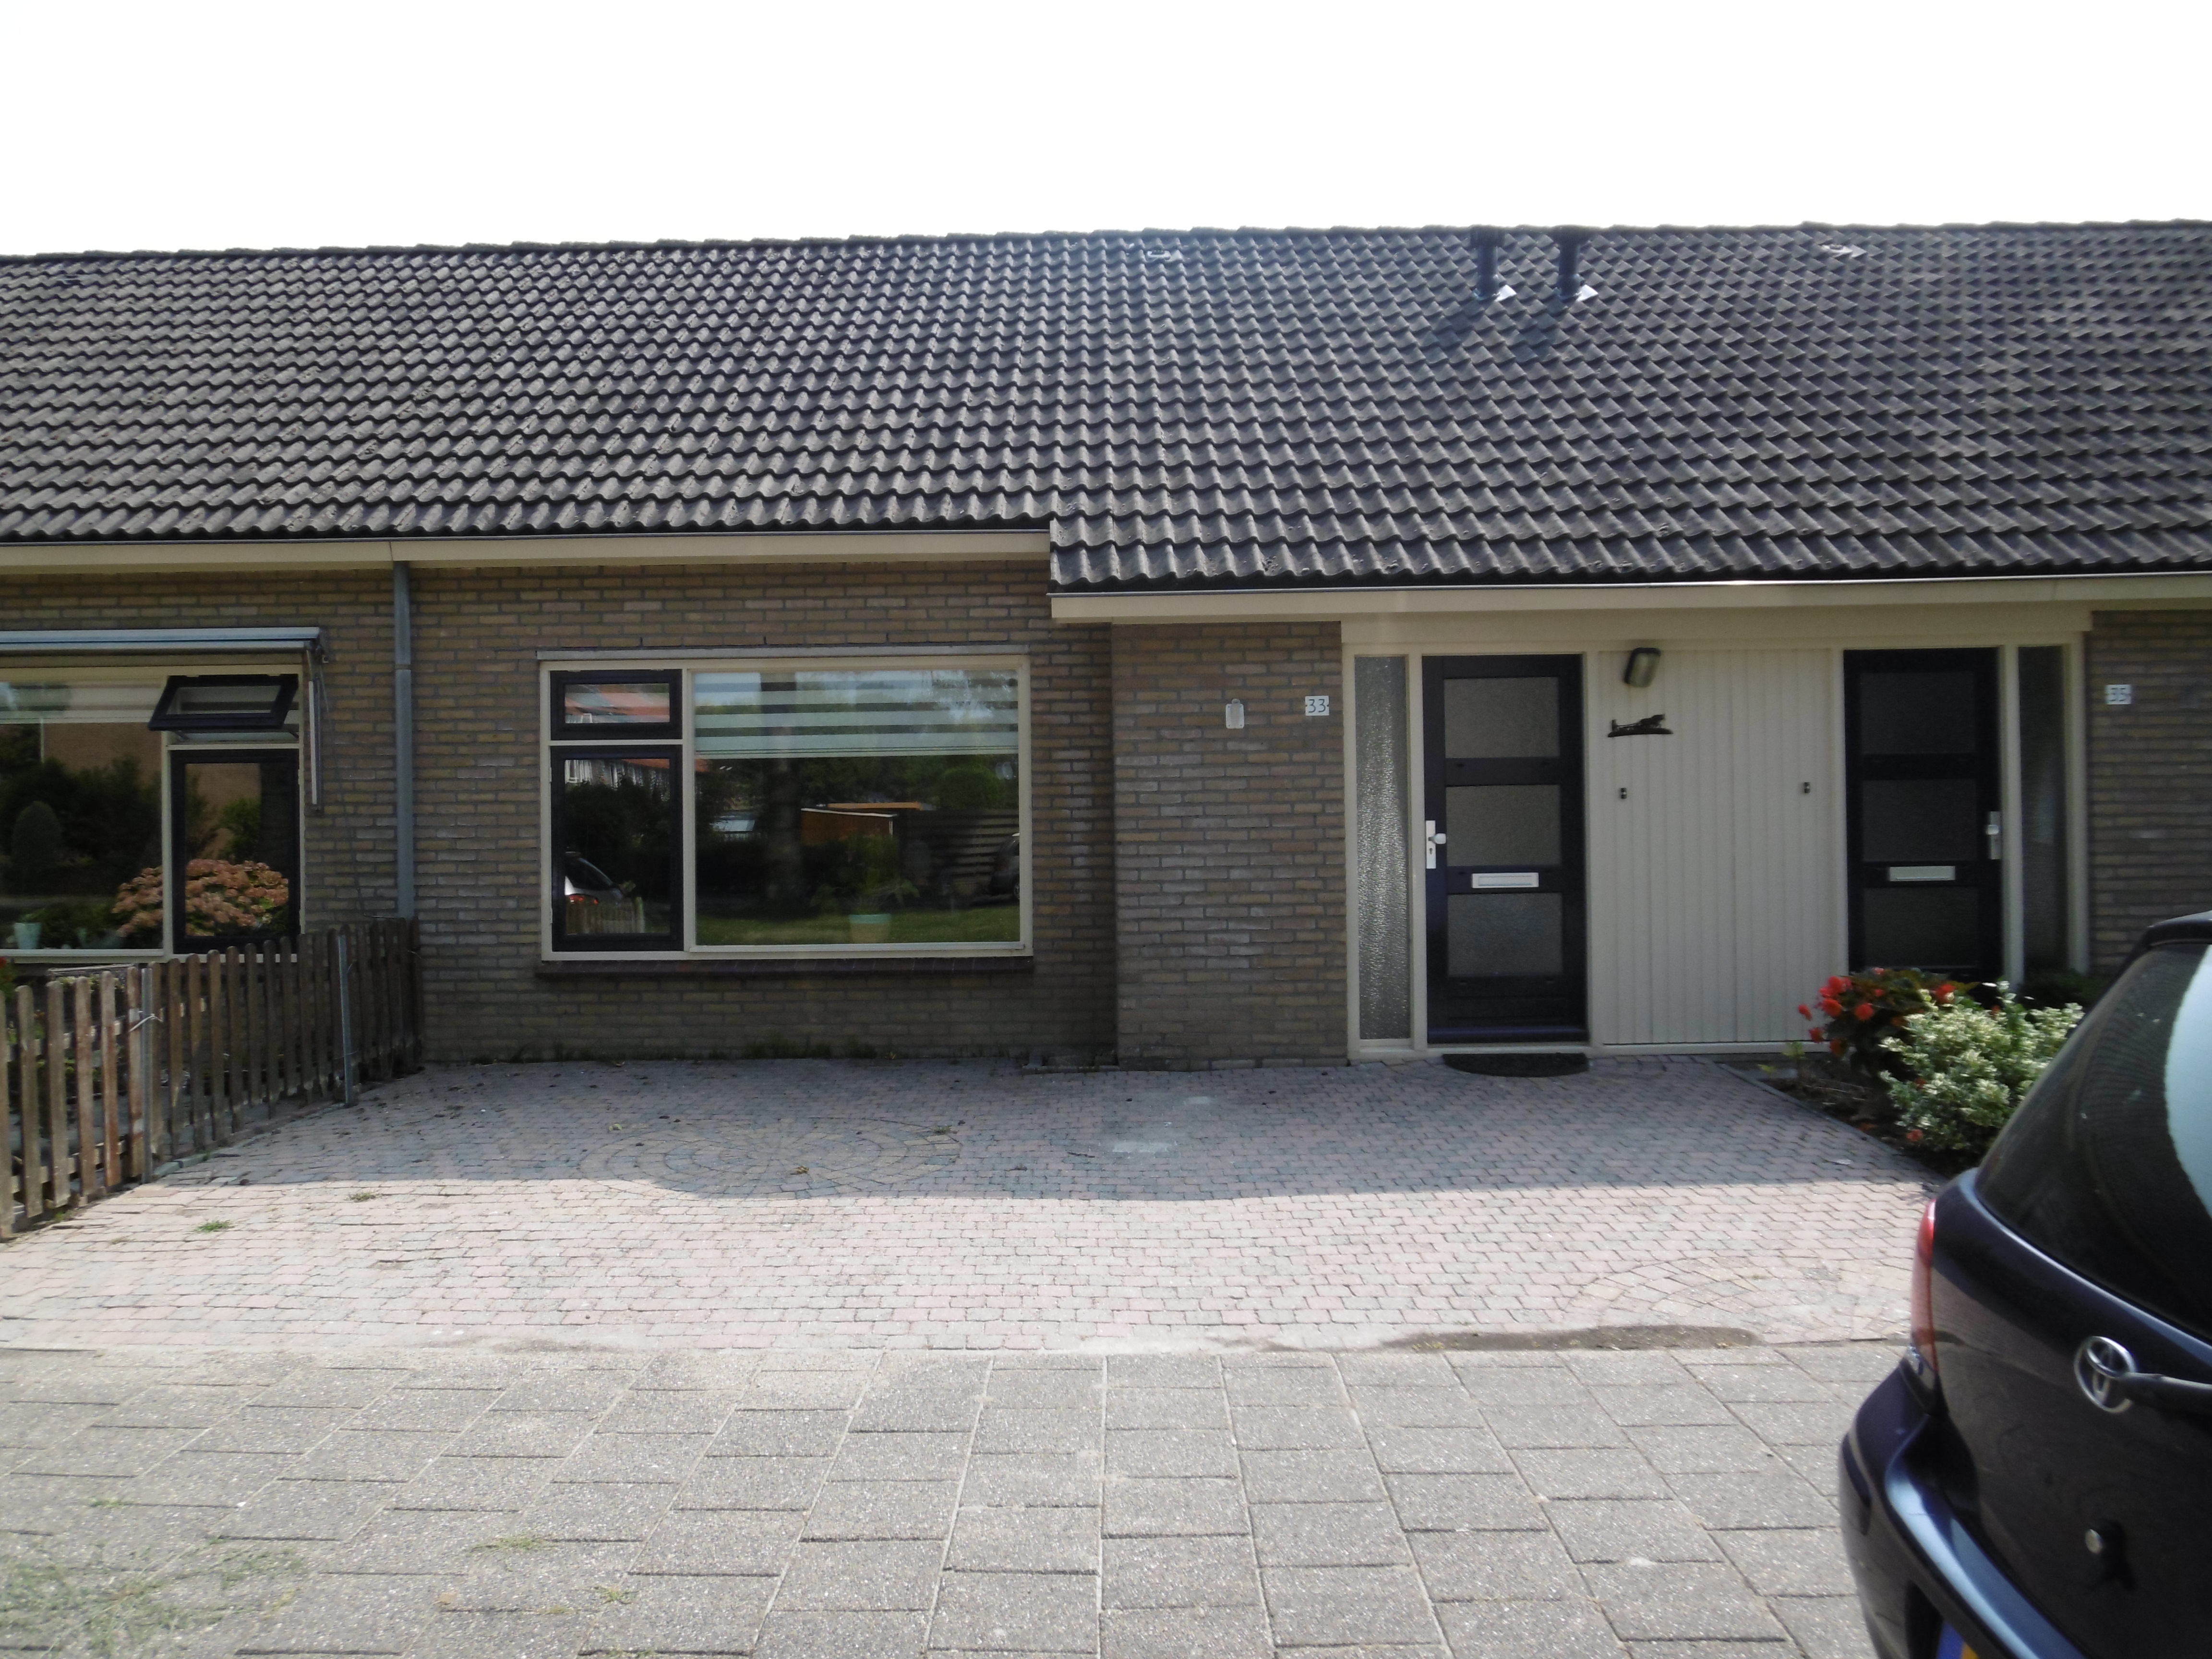 Schoolstraat 33, 8315 AT Luttelgeest, Nederland